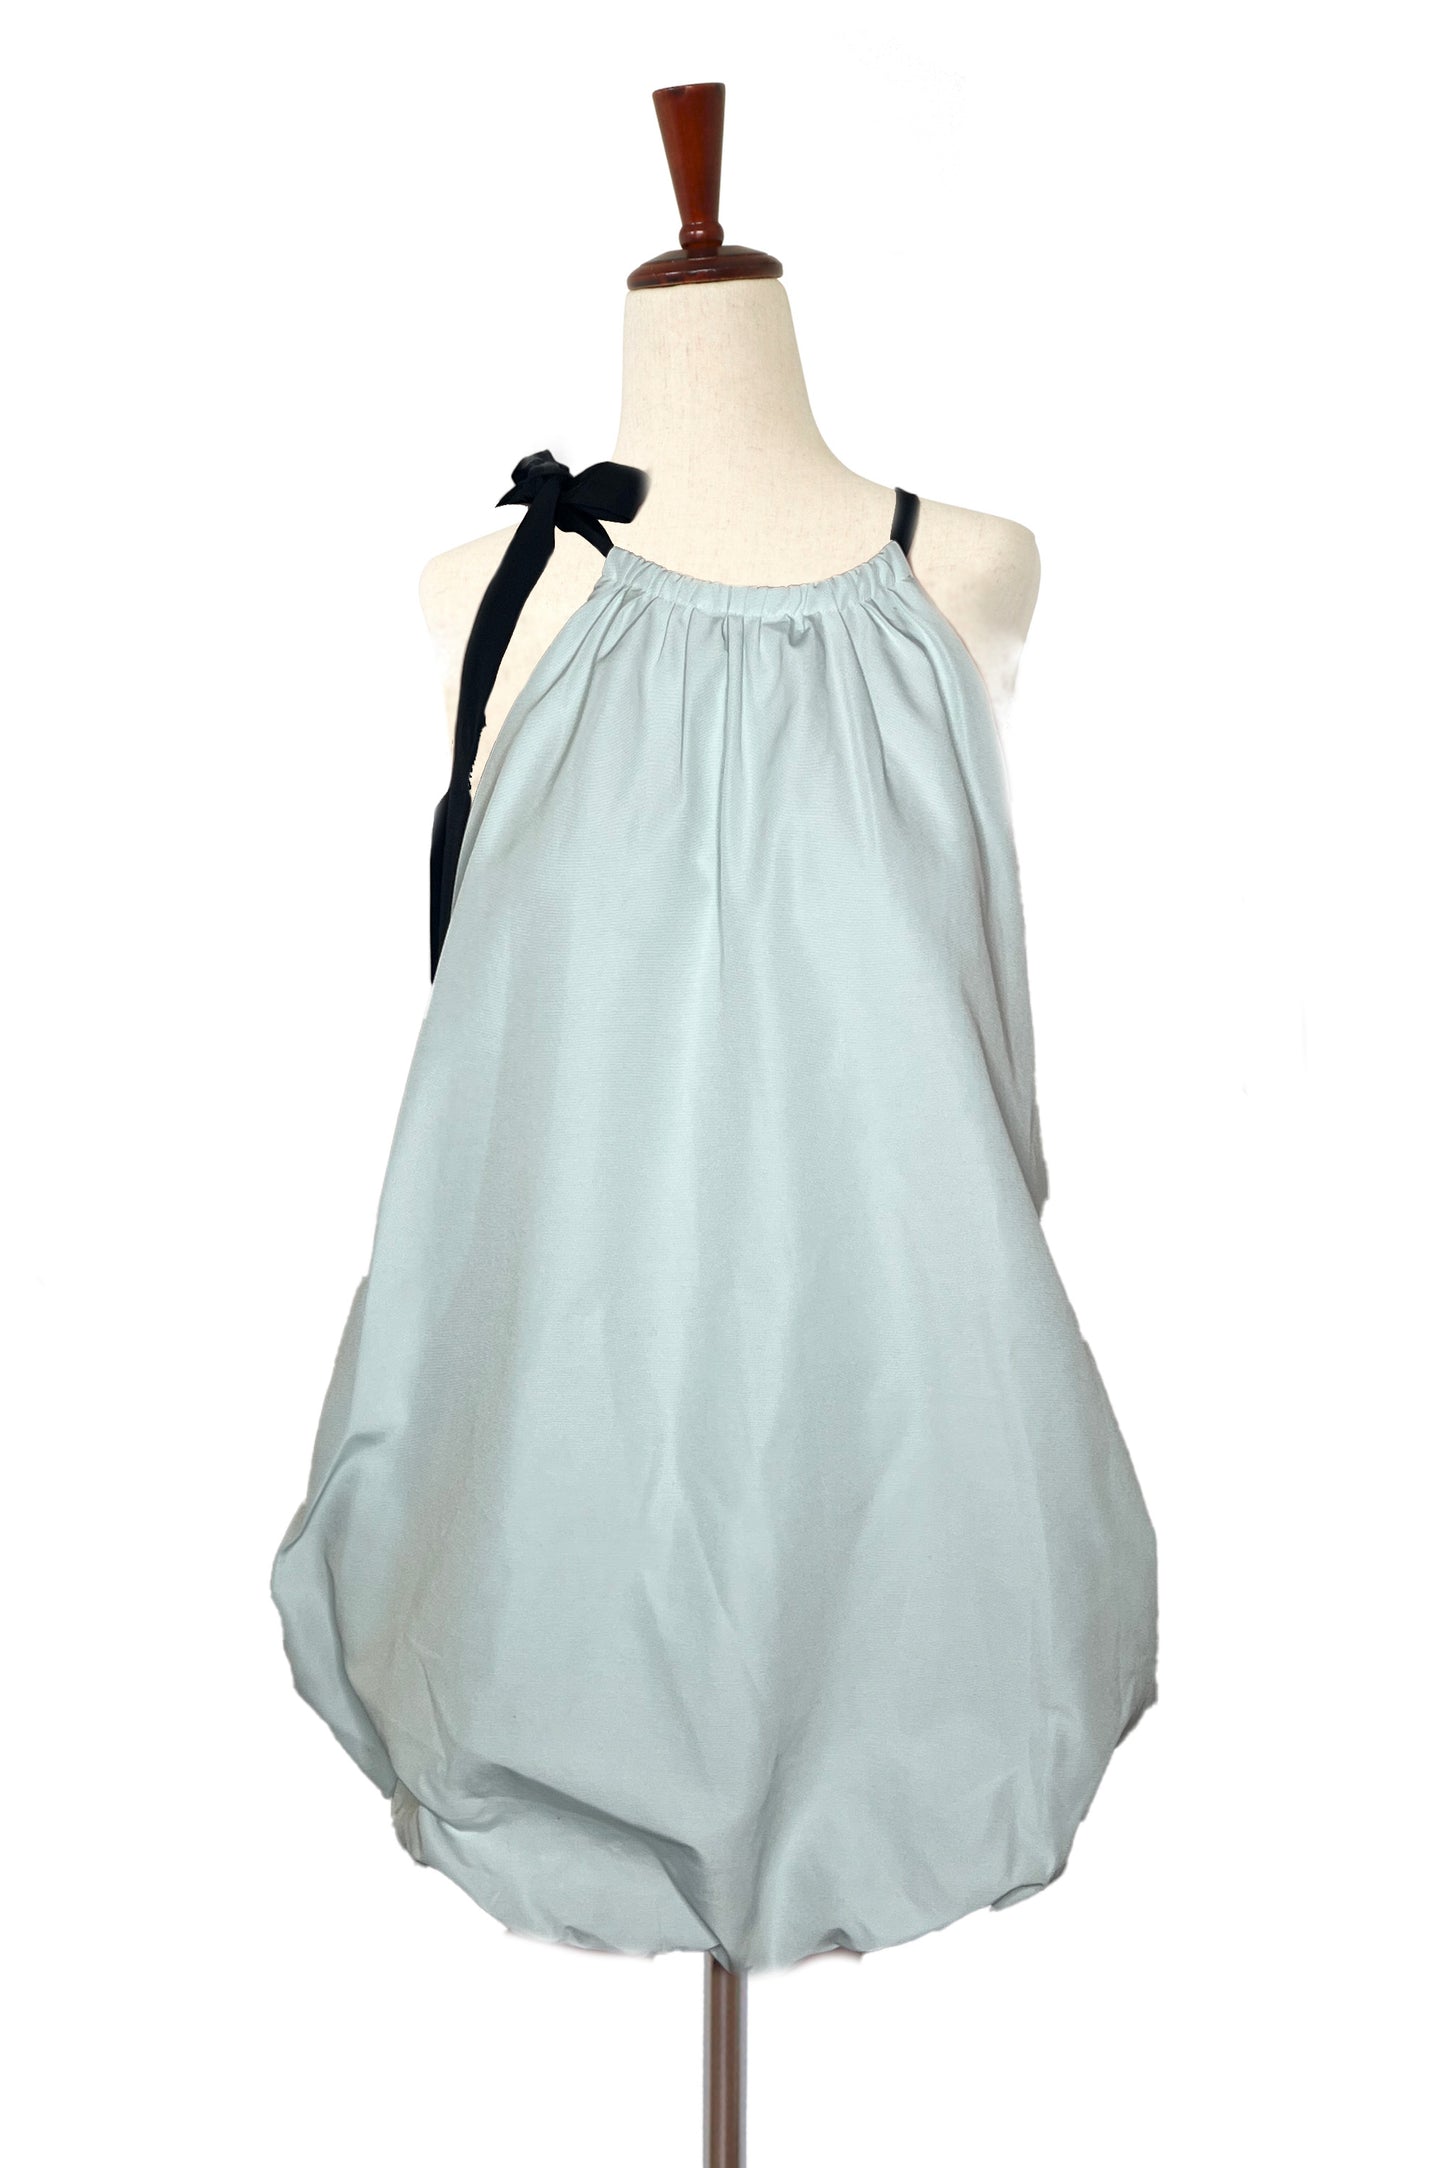 STAUD - Mint Bubble Dress with Shoulder Tie - Size M